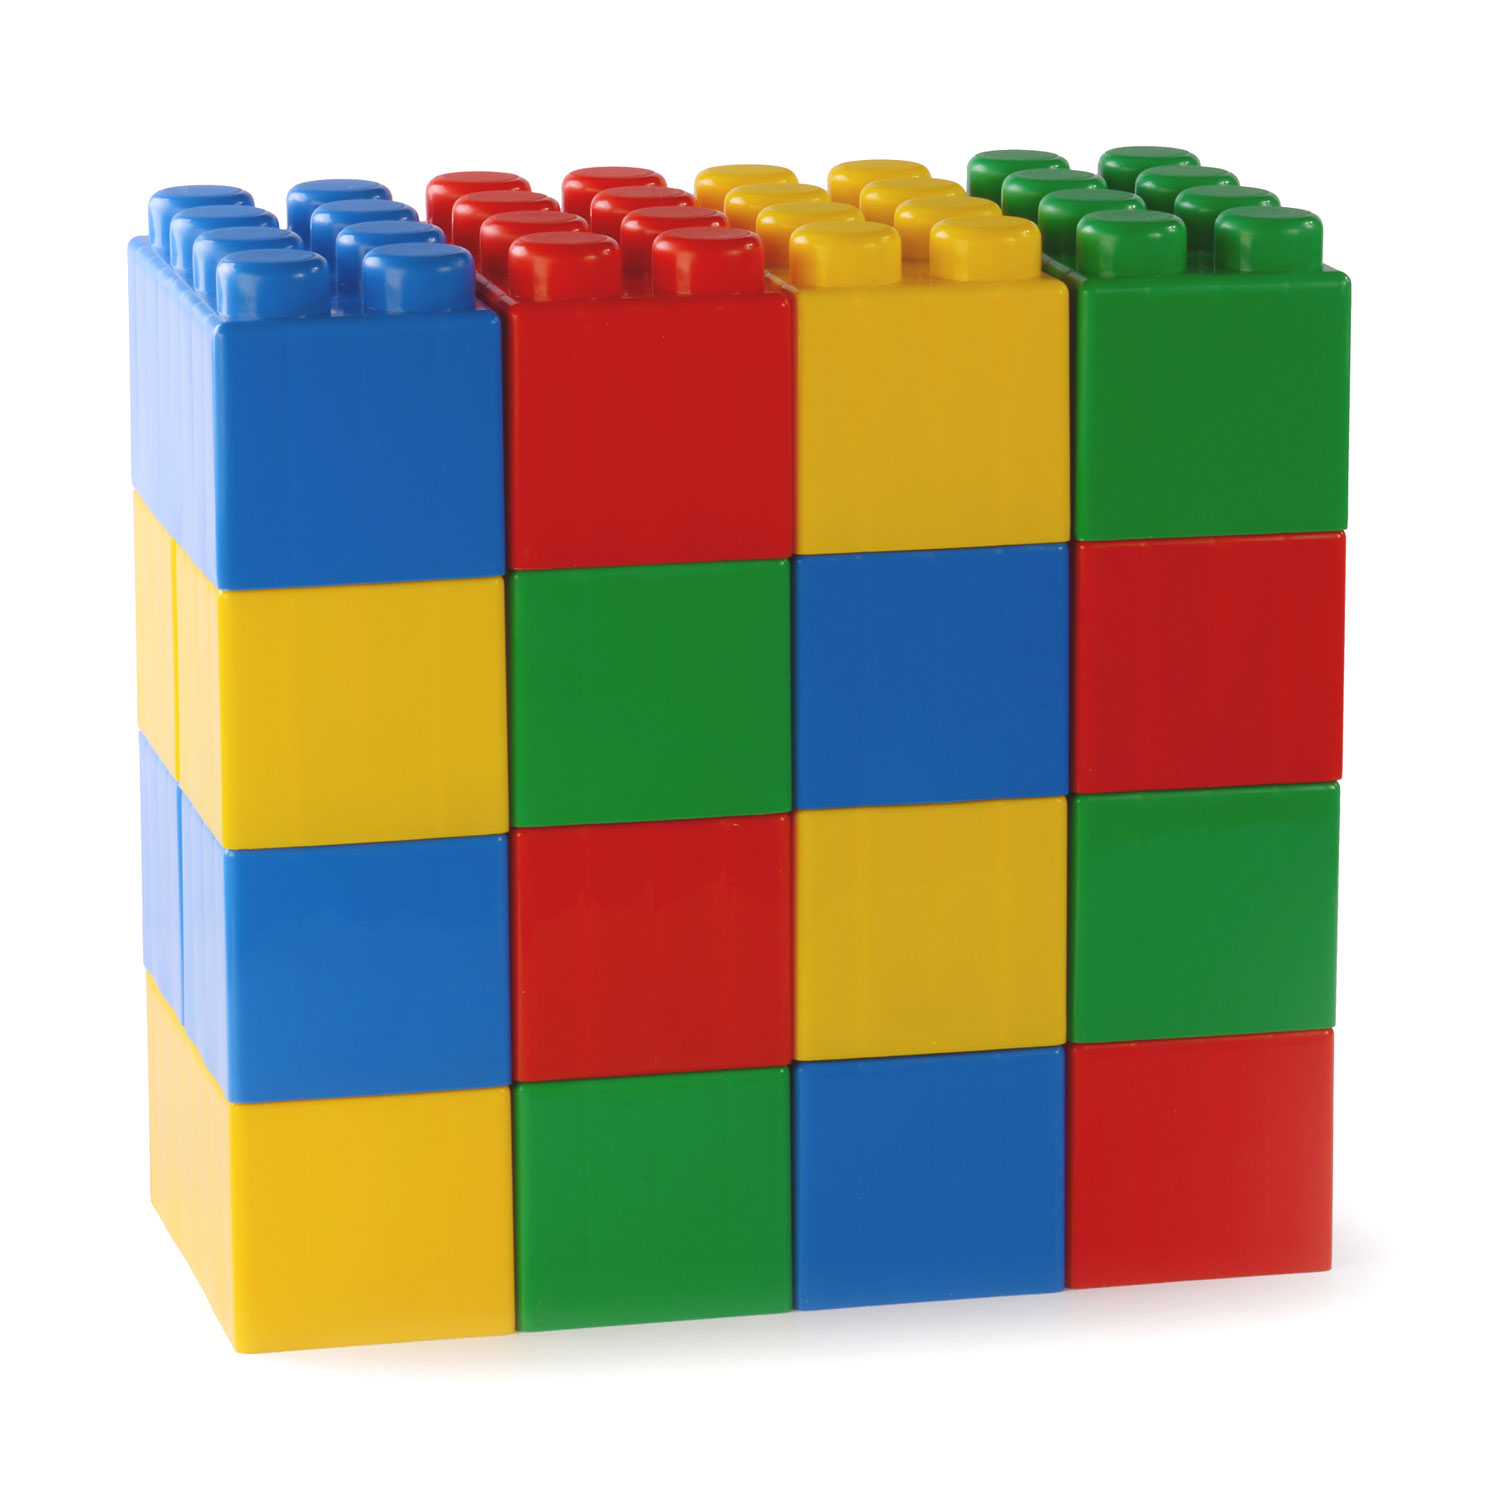 In de genade van Aan boord pond Lego XL (66x blokken) – Feestcentrale.nl